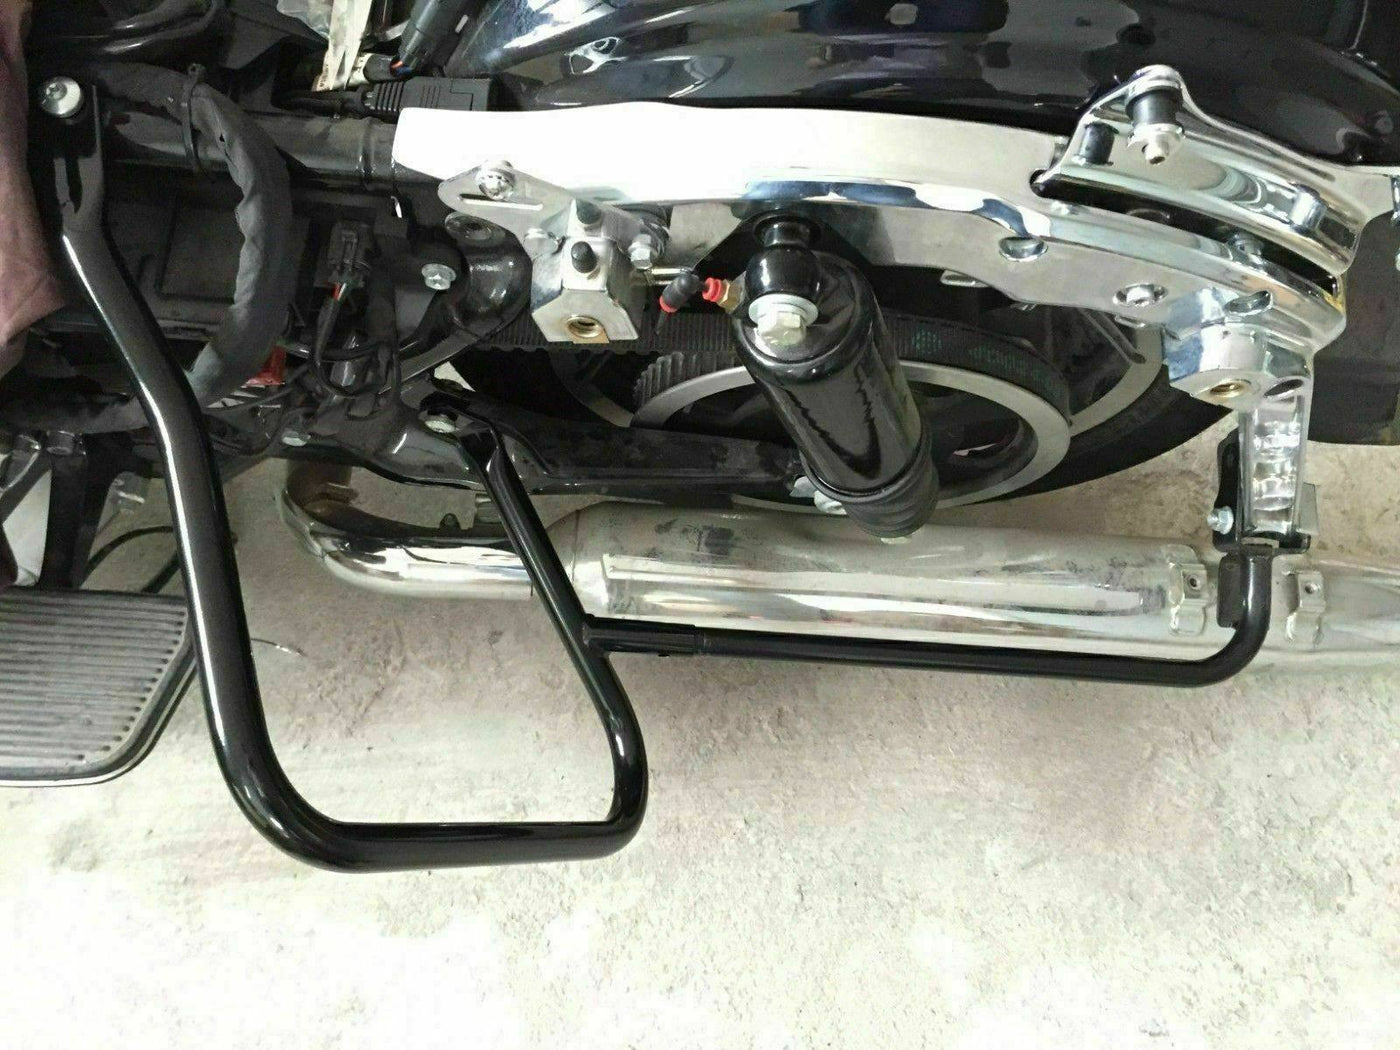 Saddlebag Saddle Bags Brackets Guards Crash Bars Rails For Harley Touring 14-21 - Moto Life Products